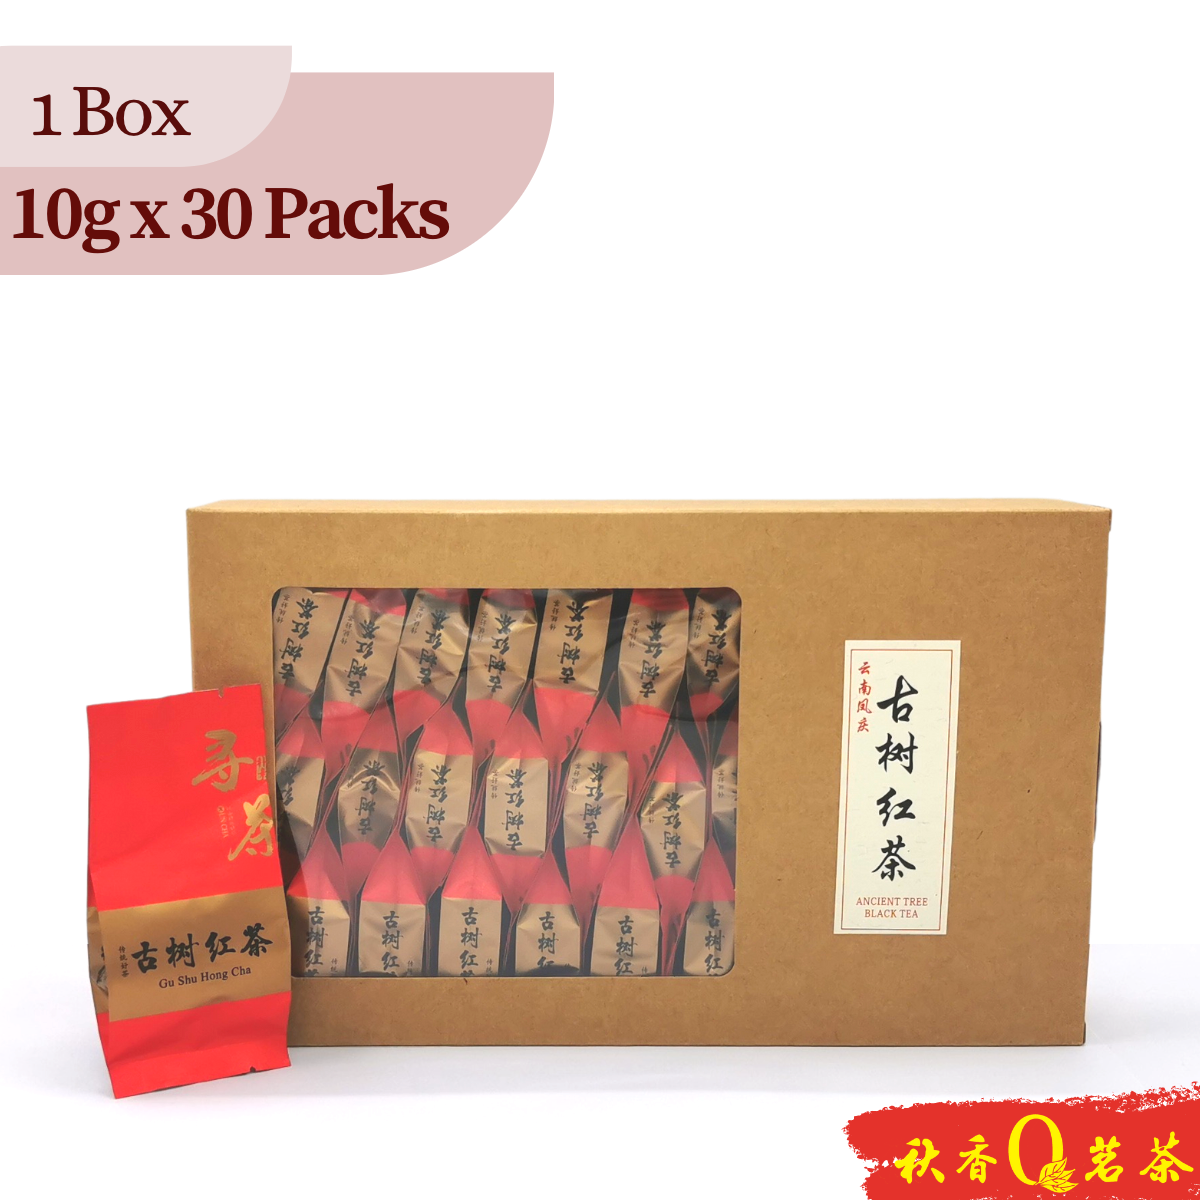 古树红茶 Black Tea (Ancient Tree) 【10g x 30 packs】|【红茶 Black tea】